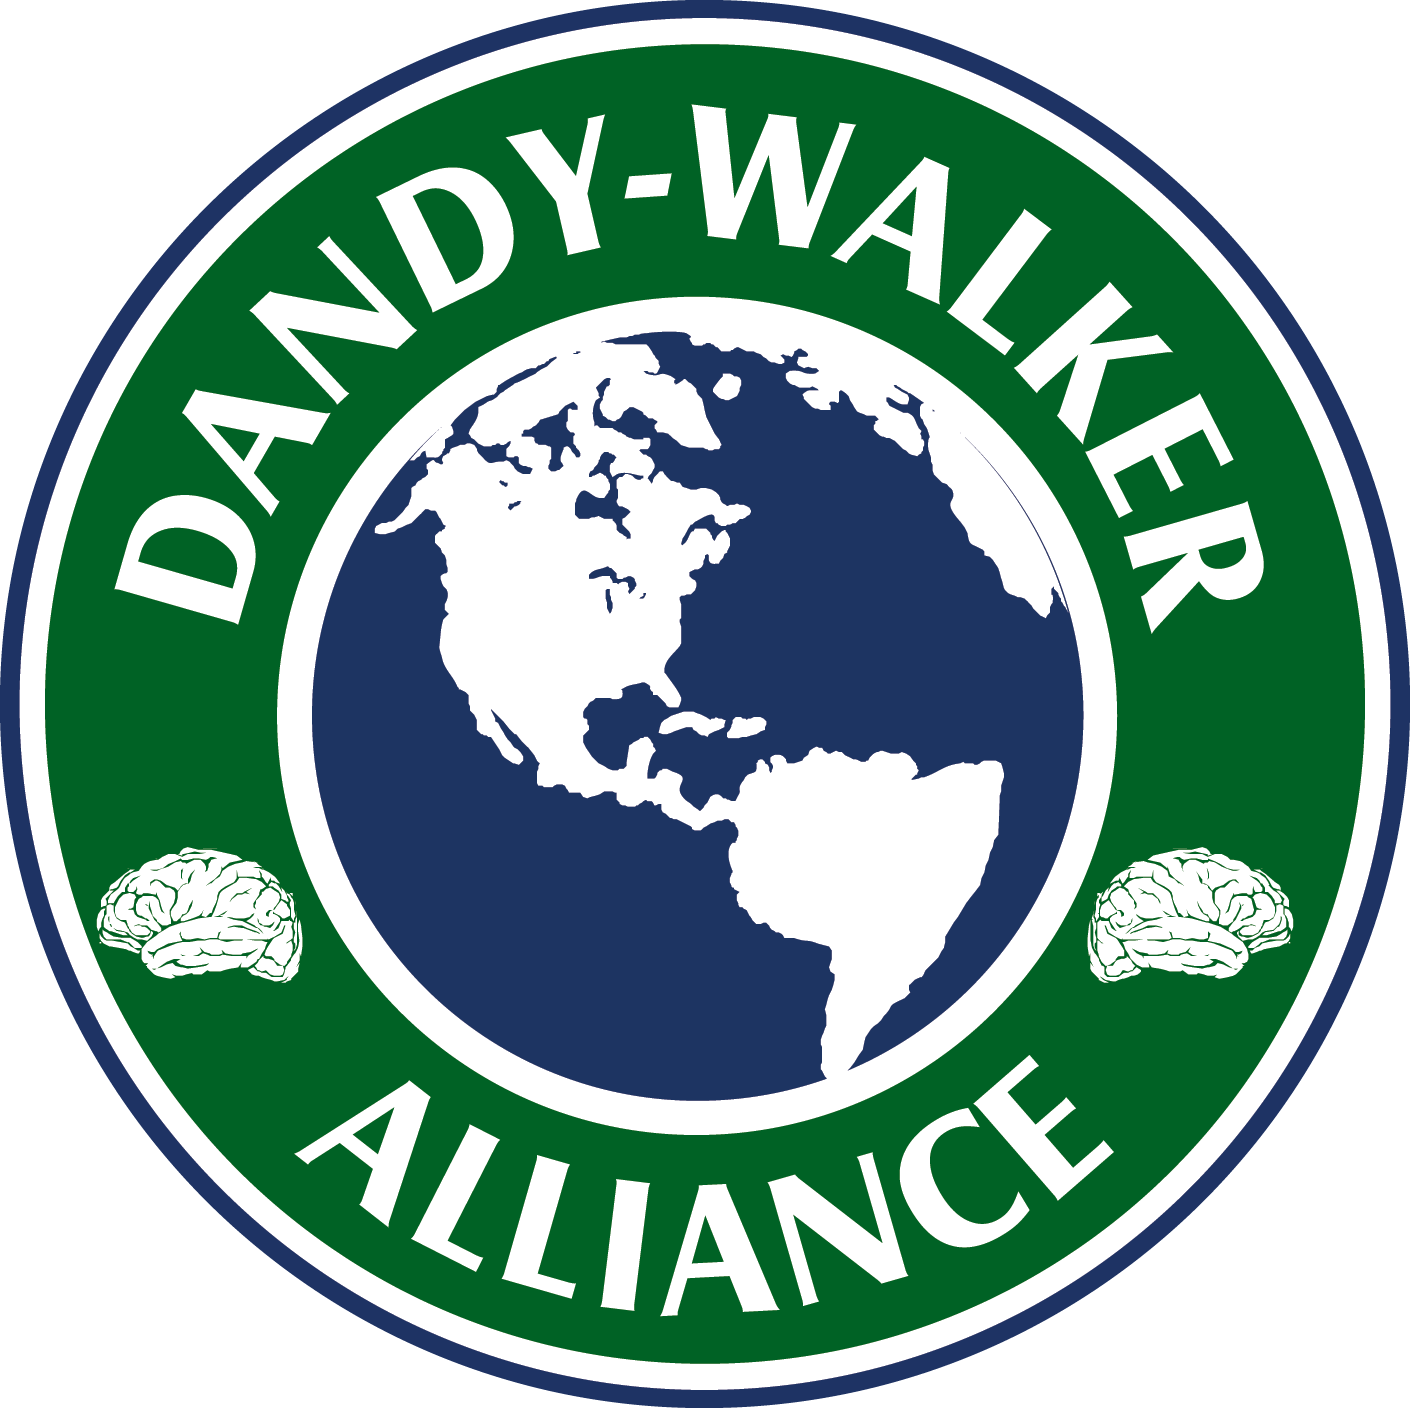 Dandy Walker Alliance, Inc. 